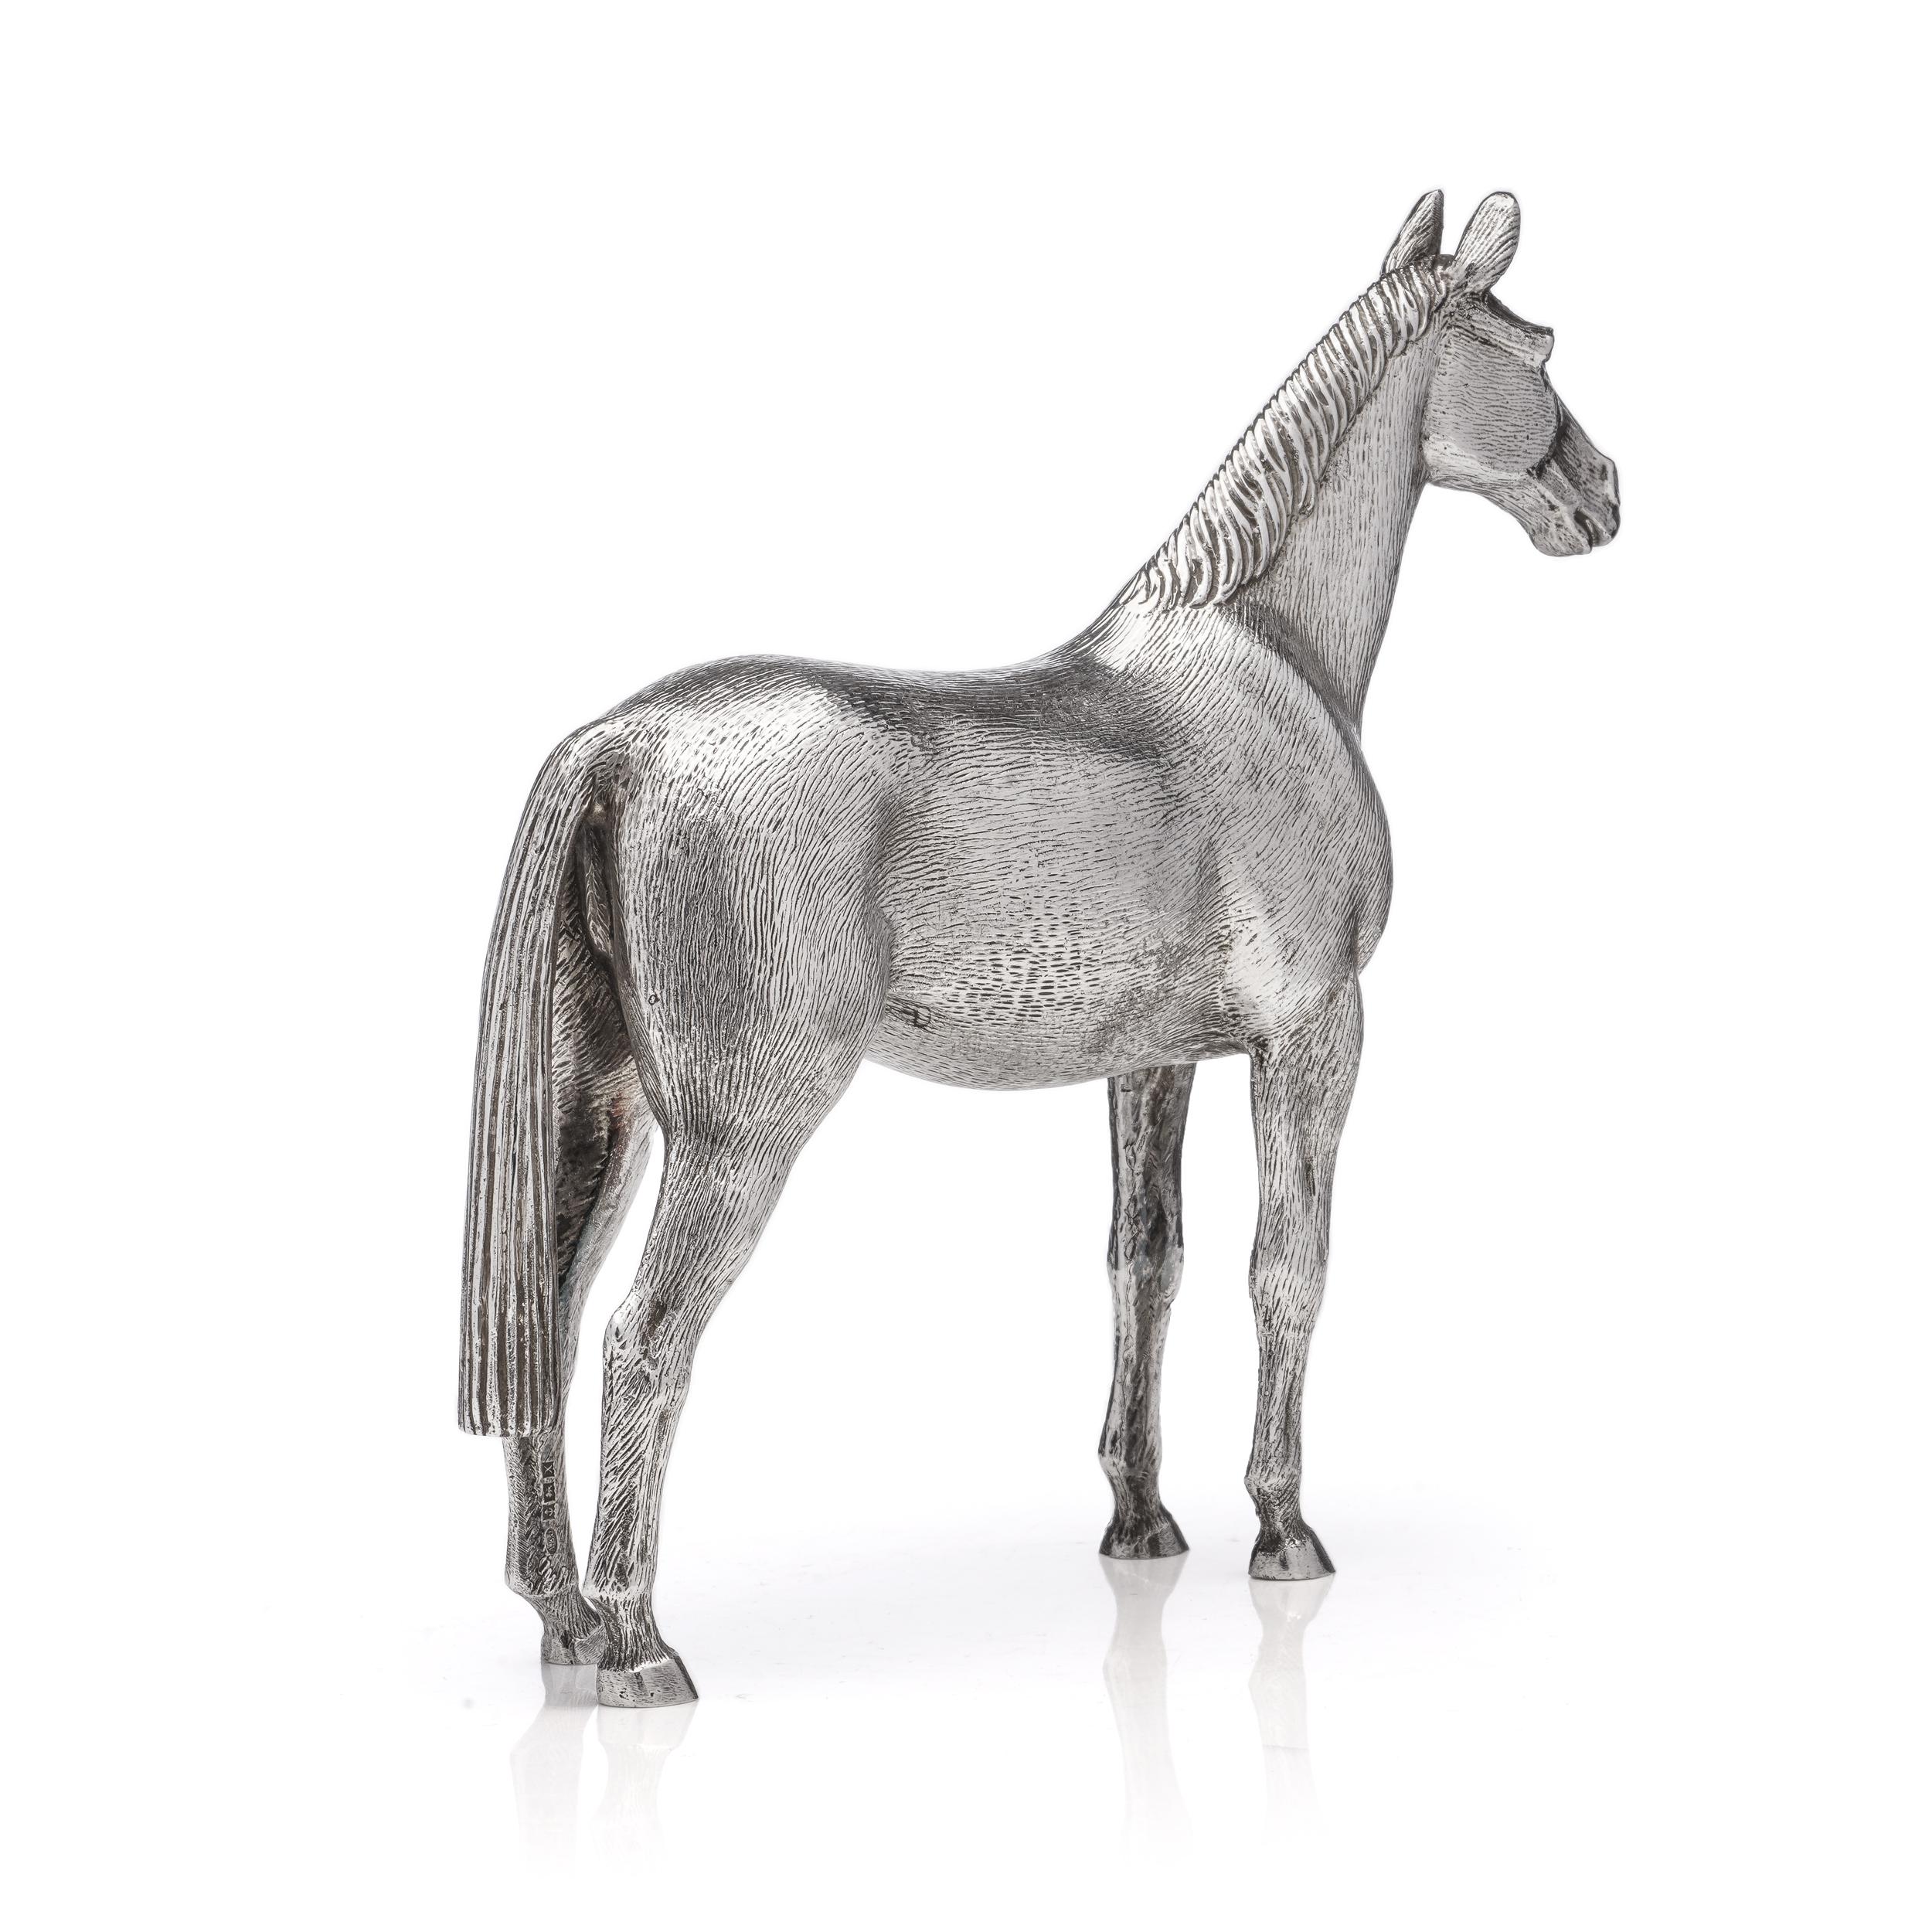  Vintage Sterling Silver Horse Figurine For Sale 1